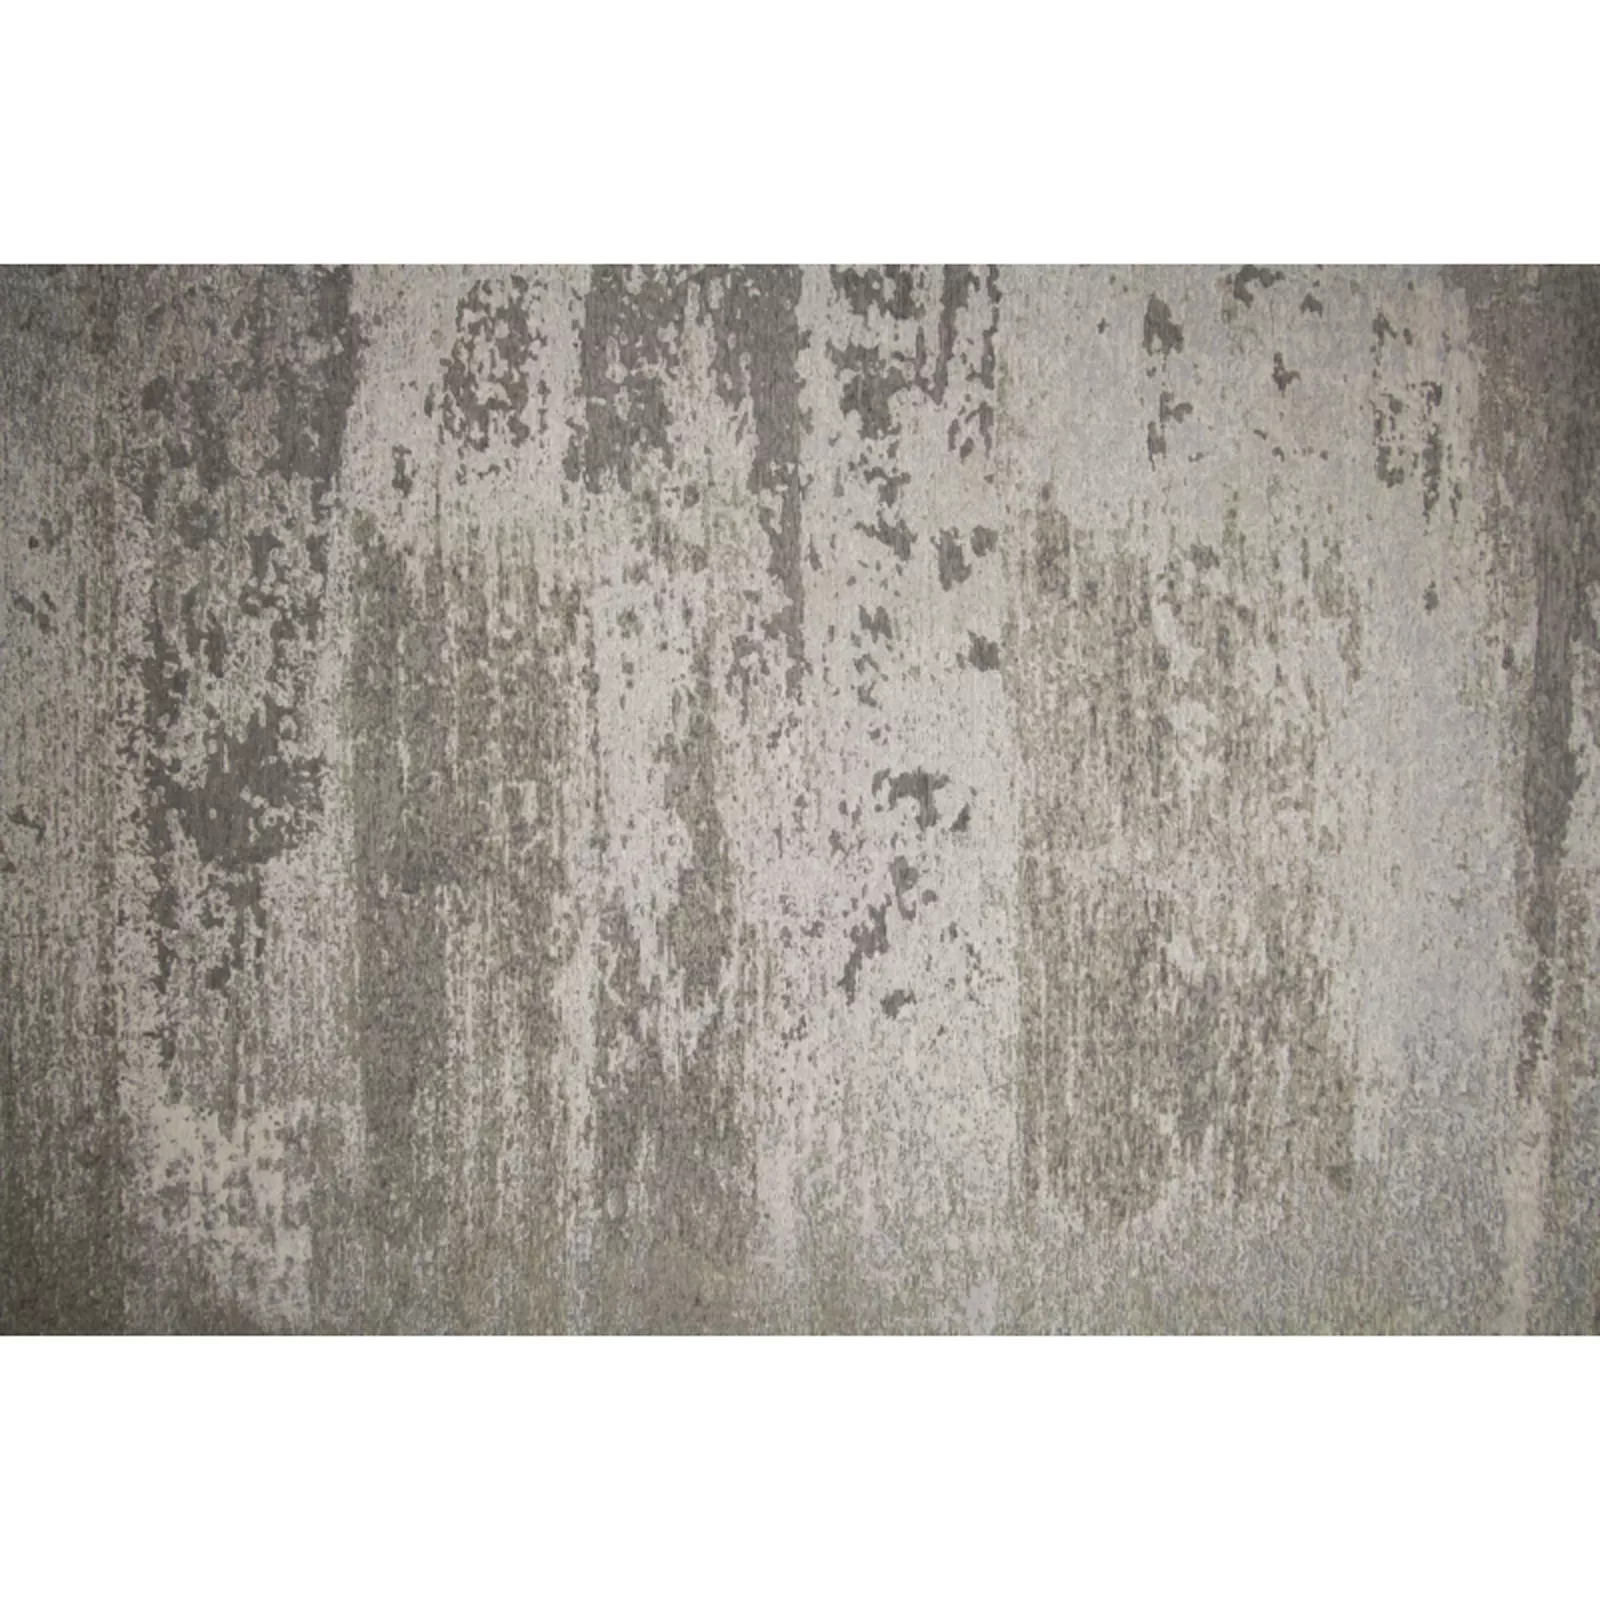 Vloerkleed (240x330cm) Cendre - Soft grey